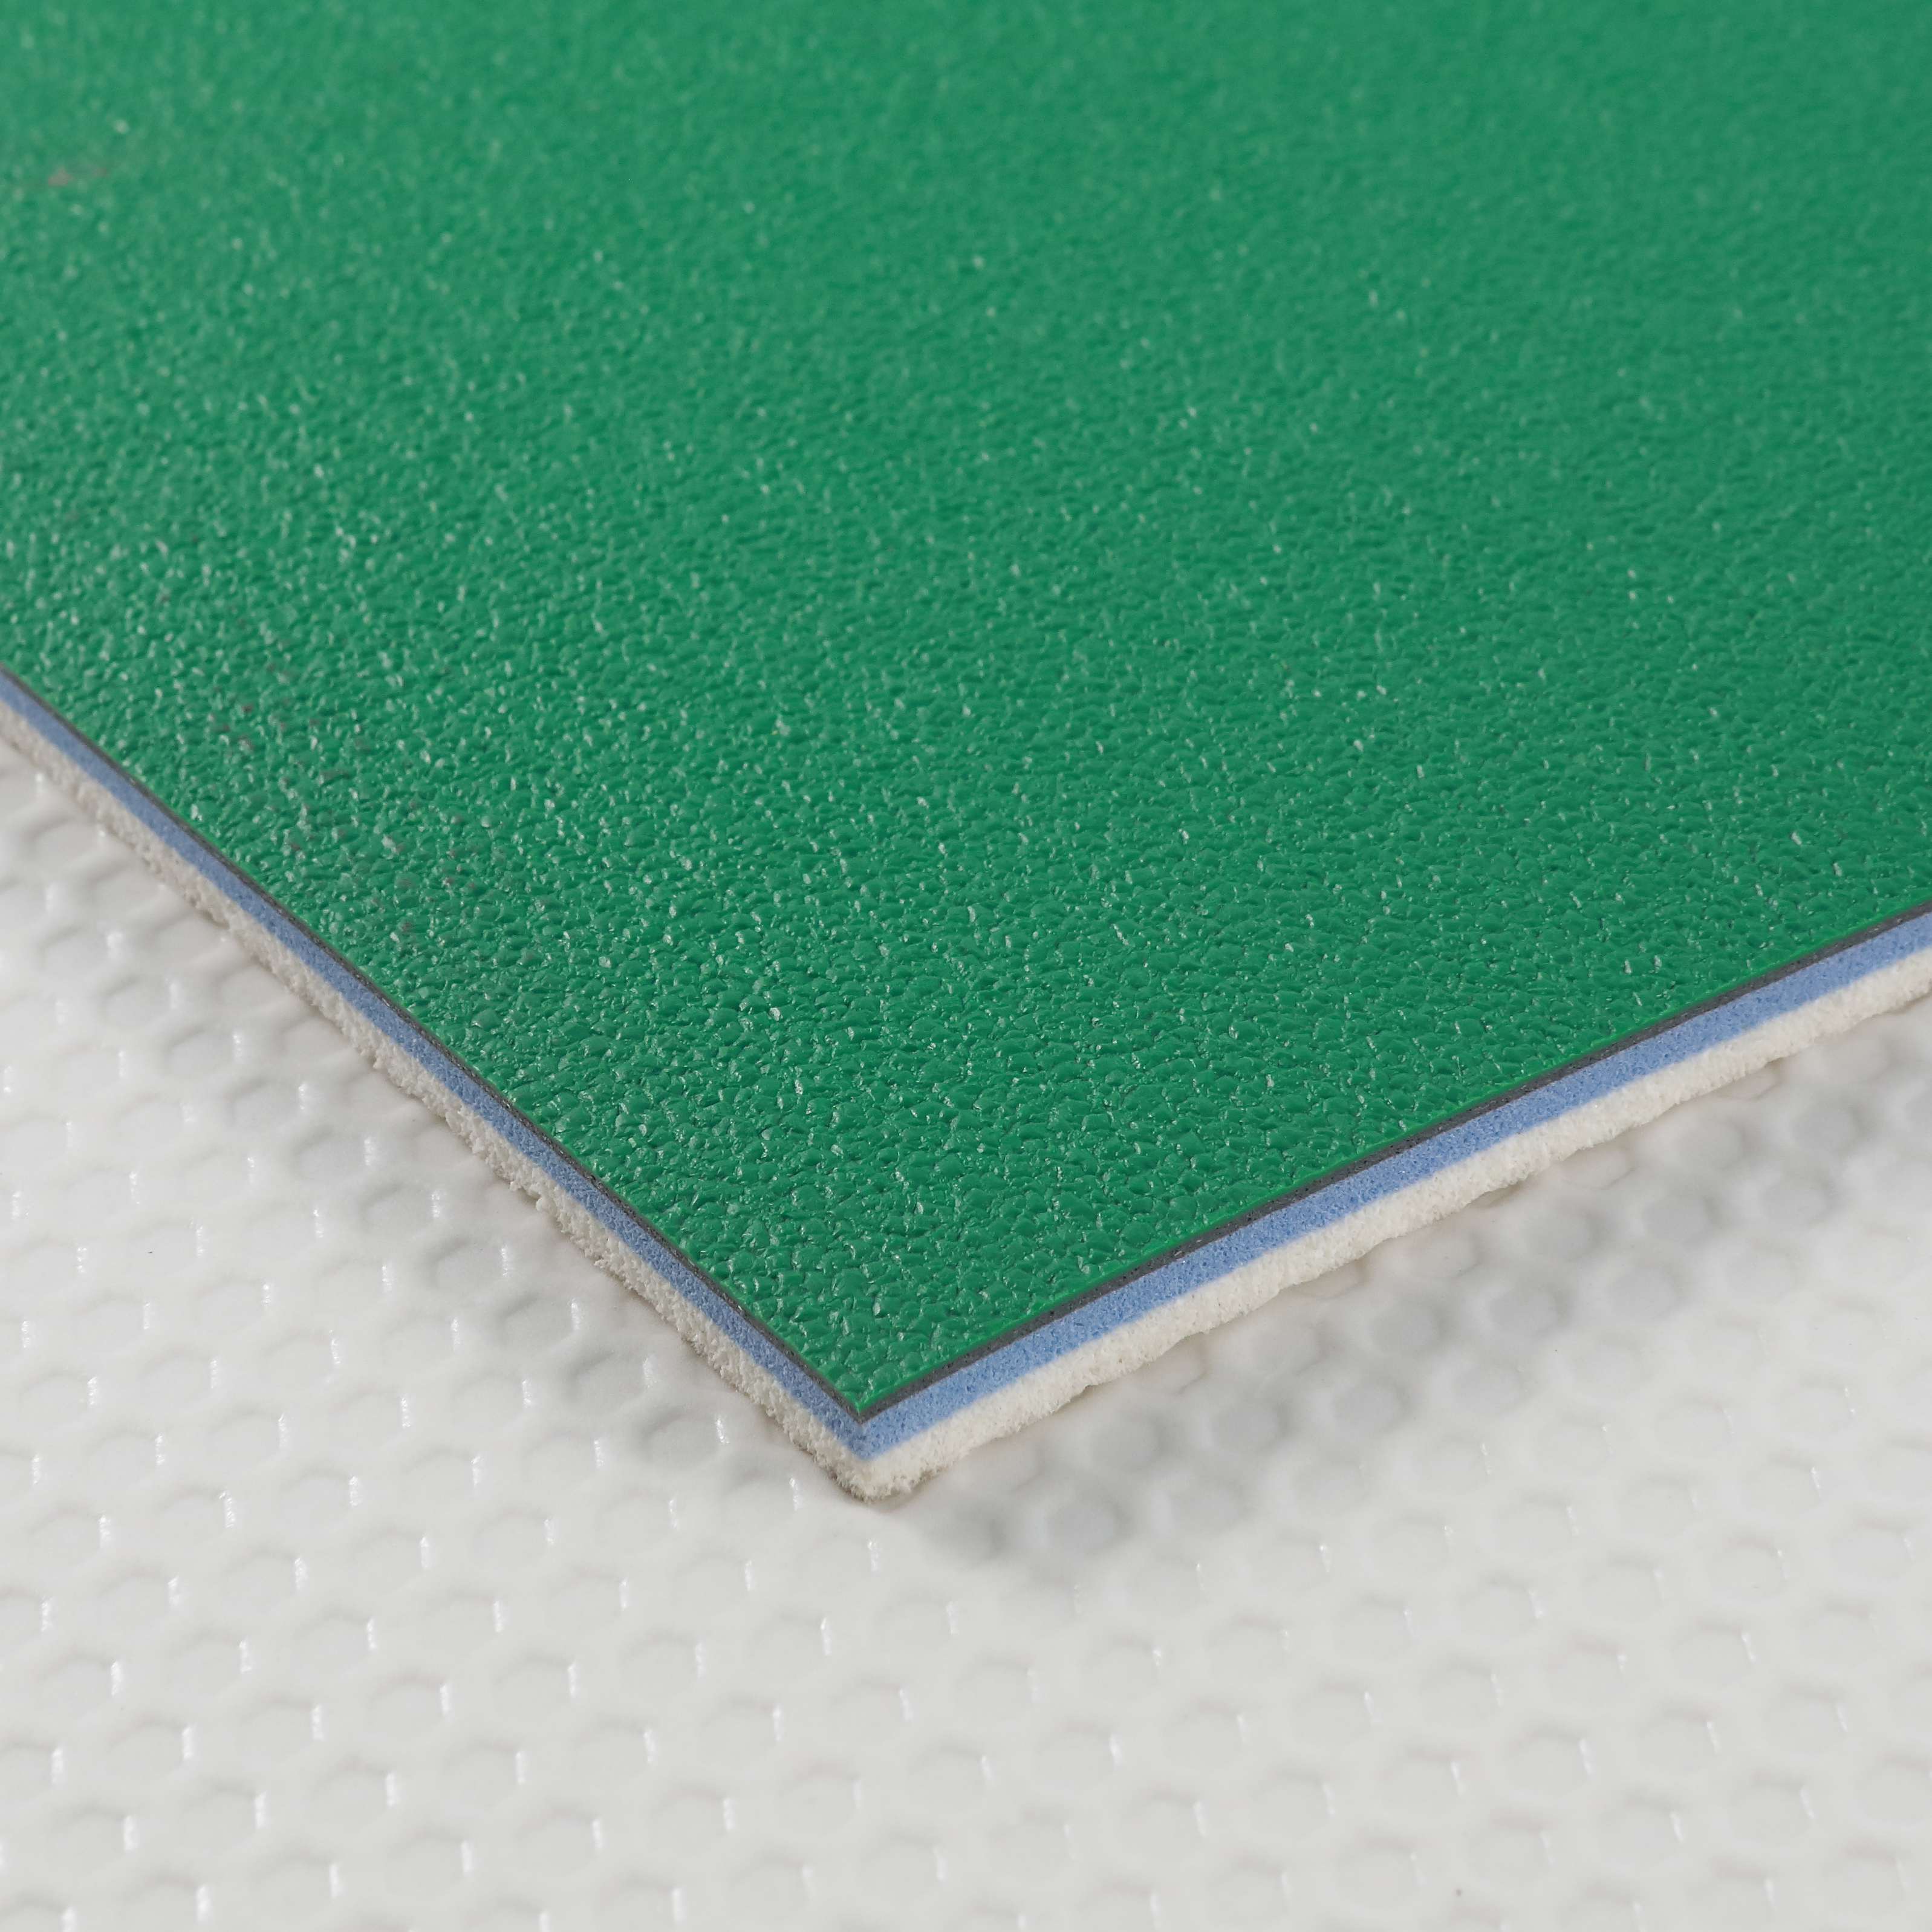 Revêtement de sol en PVC de haute qualité pour tapis de court de tennis